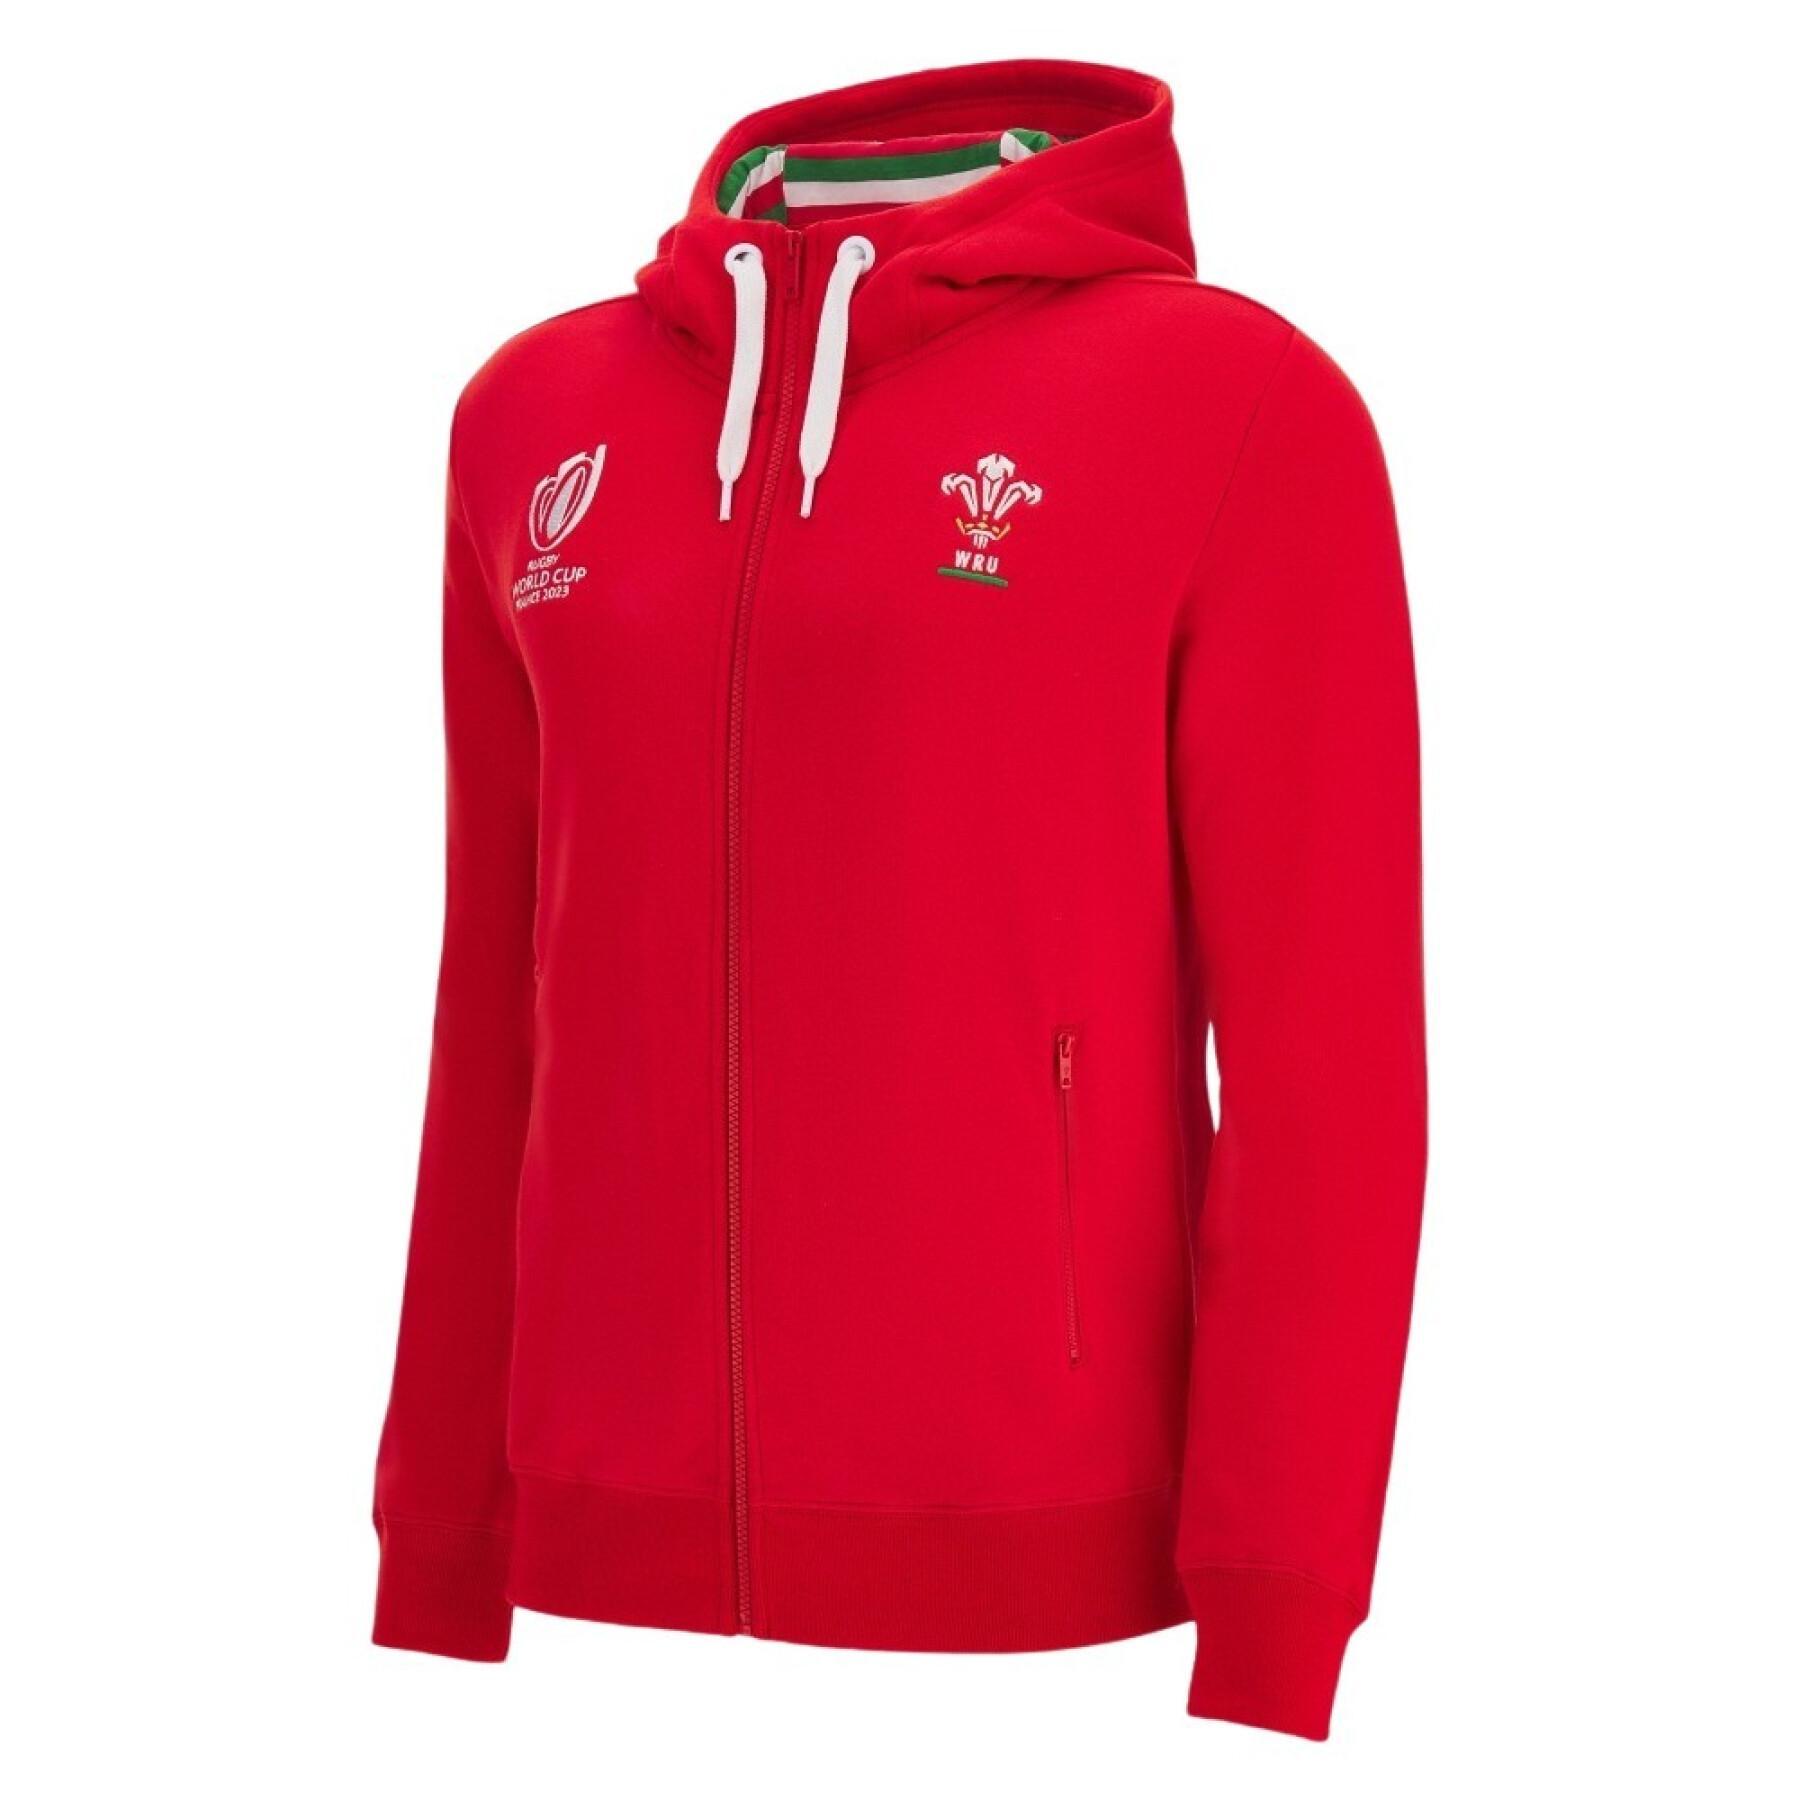 Sweatshirt zapinany na zamek błyskawiczny z kapturem Pays de Galles Rugby XV Merch RWC Country. 2023